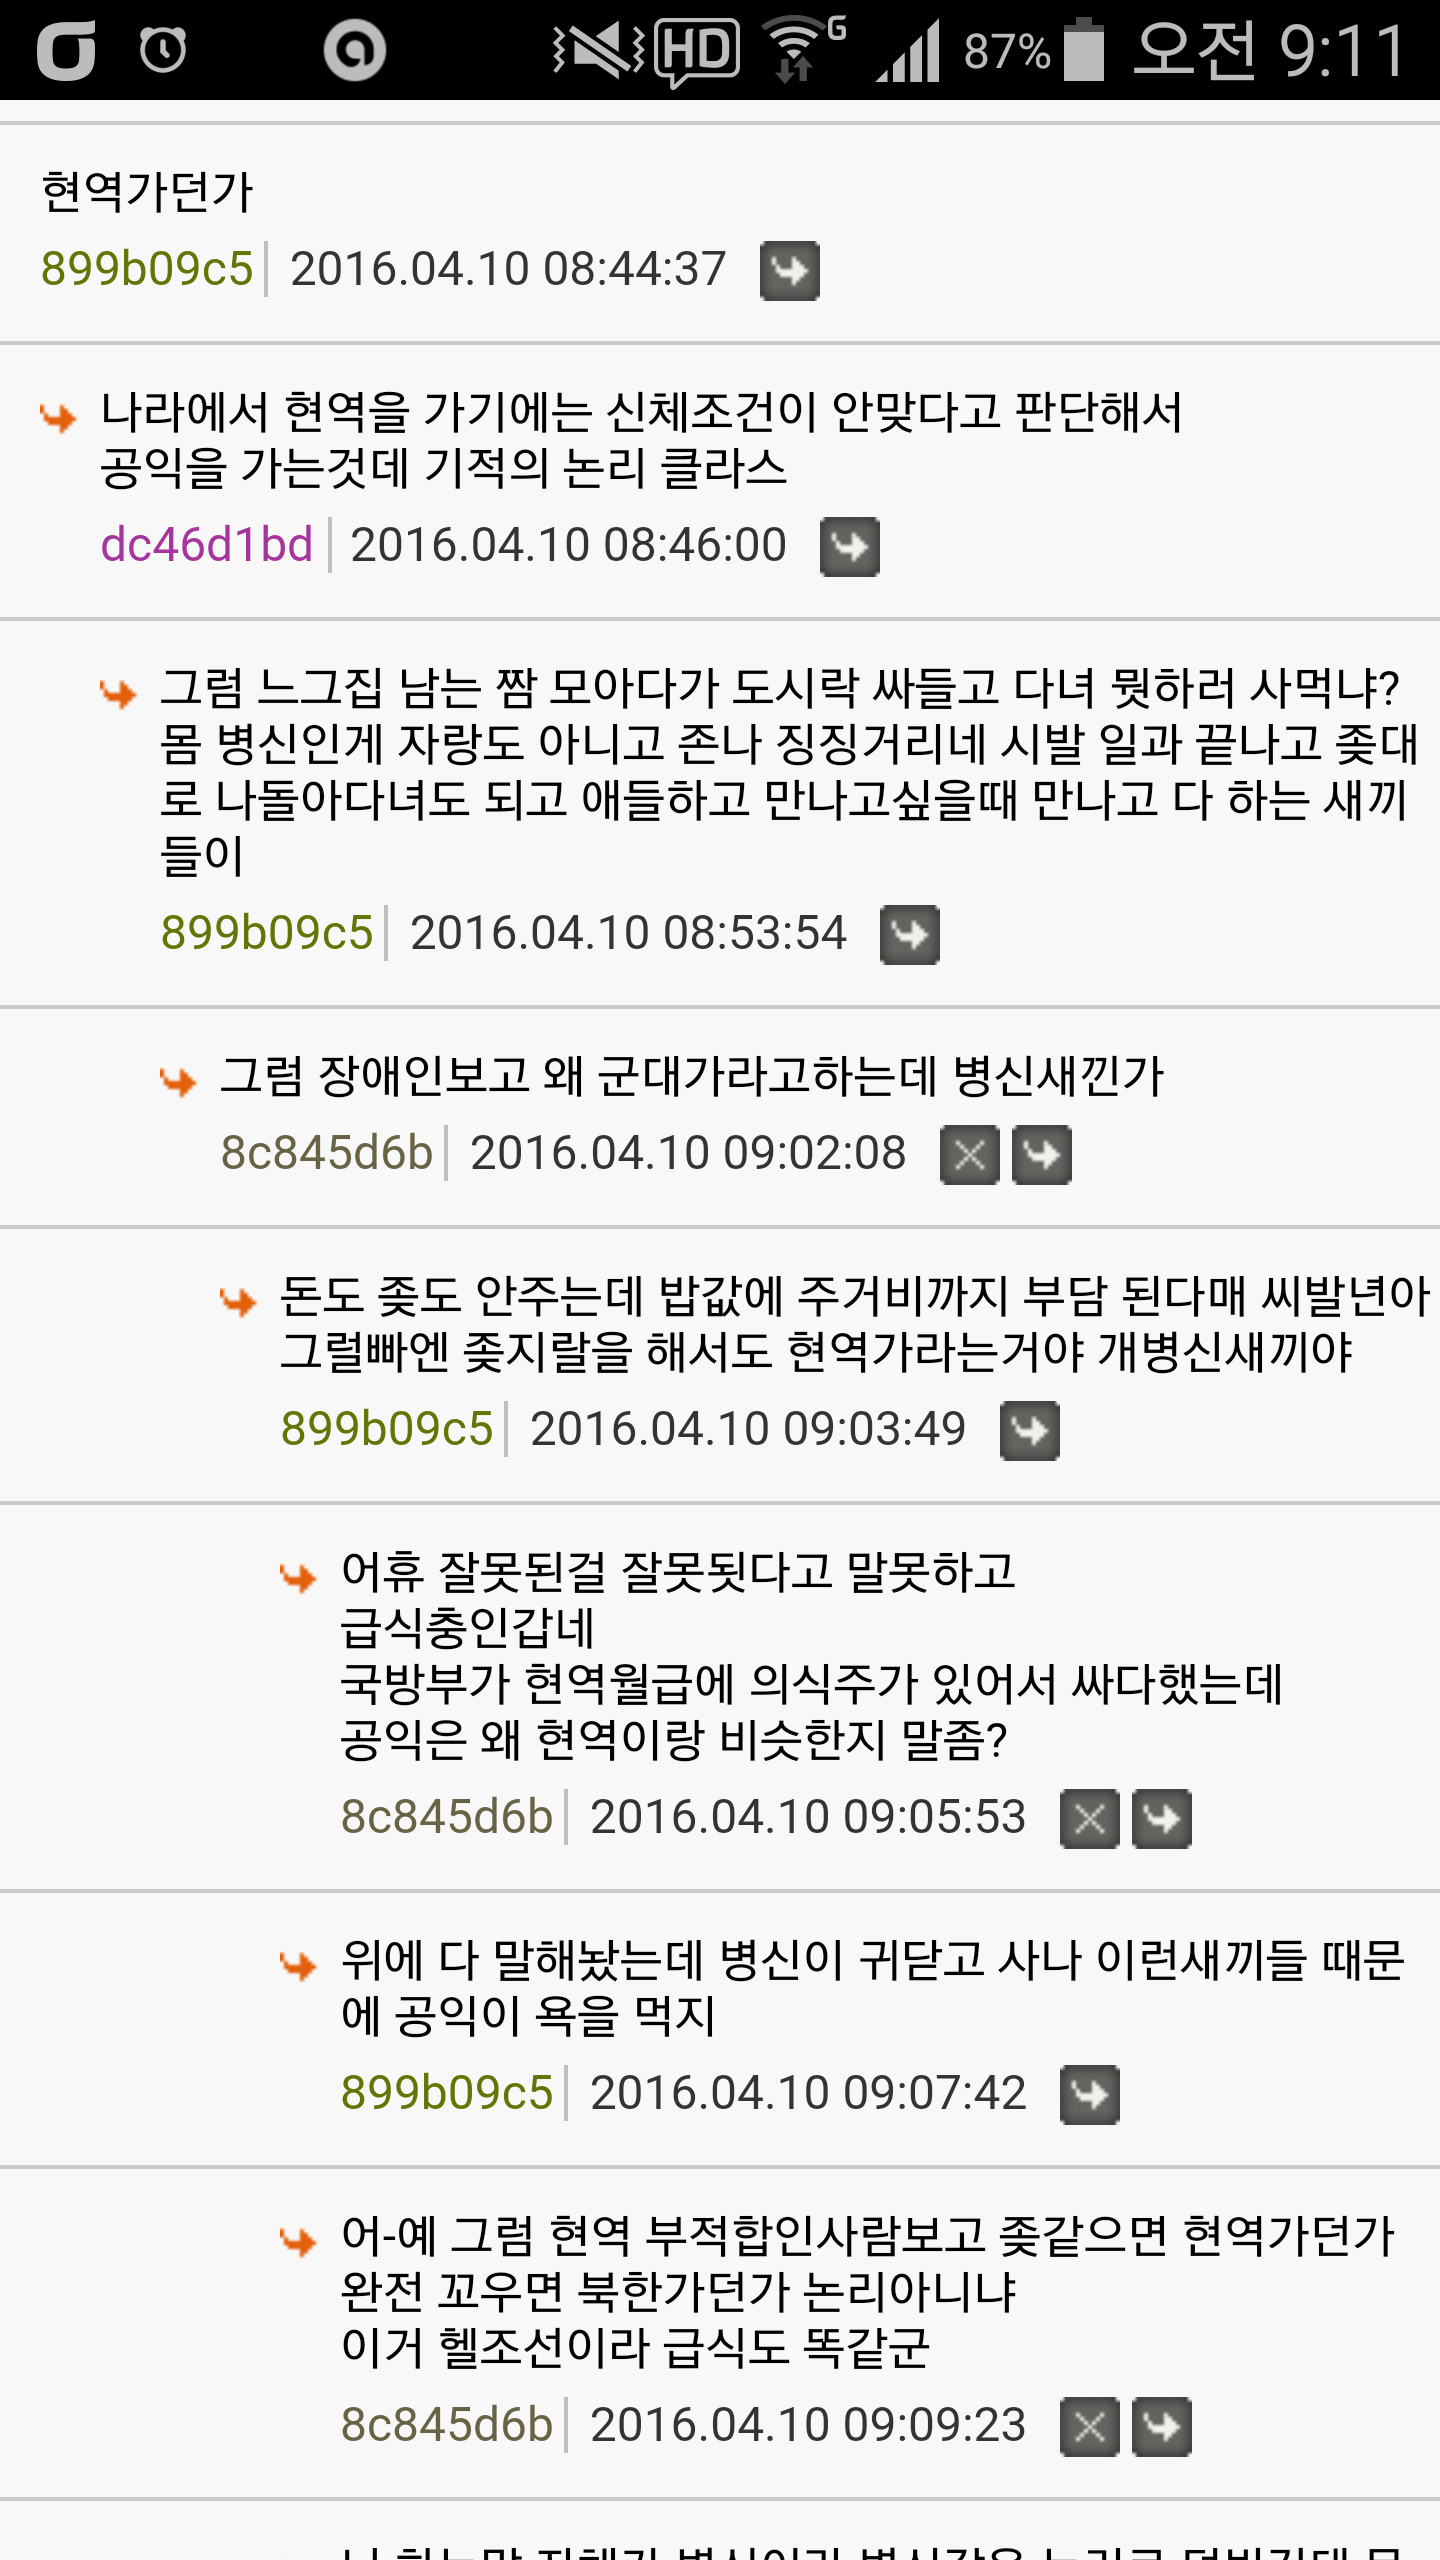 Screenshot_2016-04-10-09-11-37.png : 익게 공익월급문제....헬조선